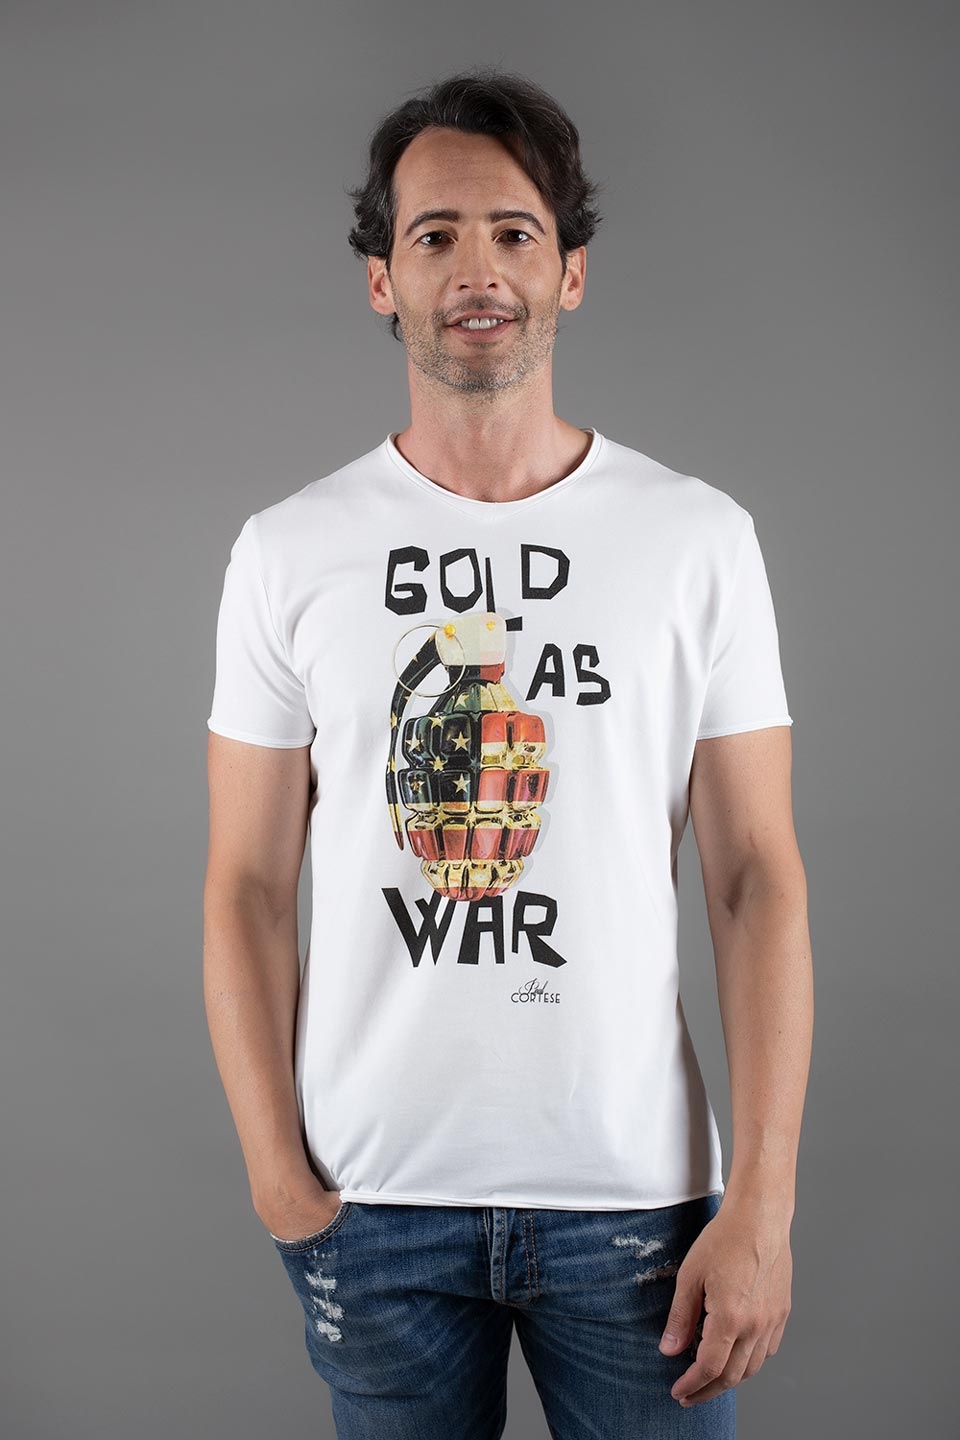 Gold as War